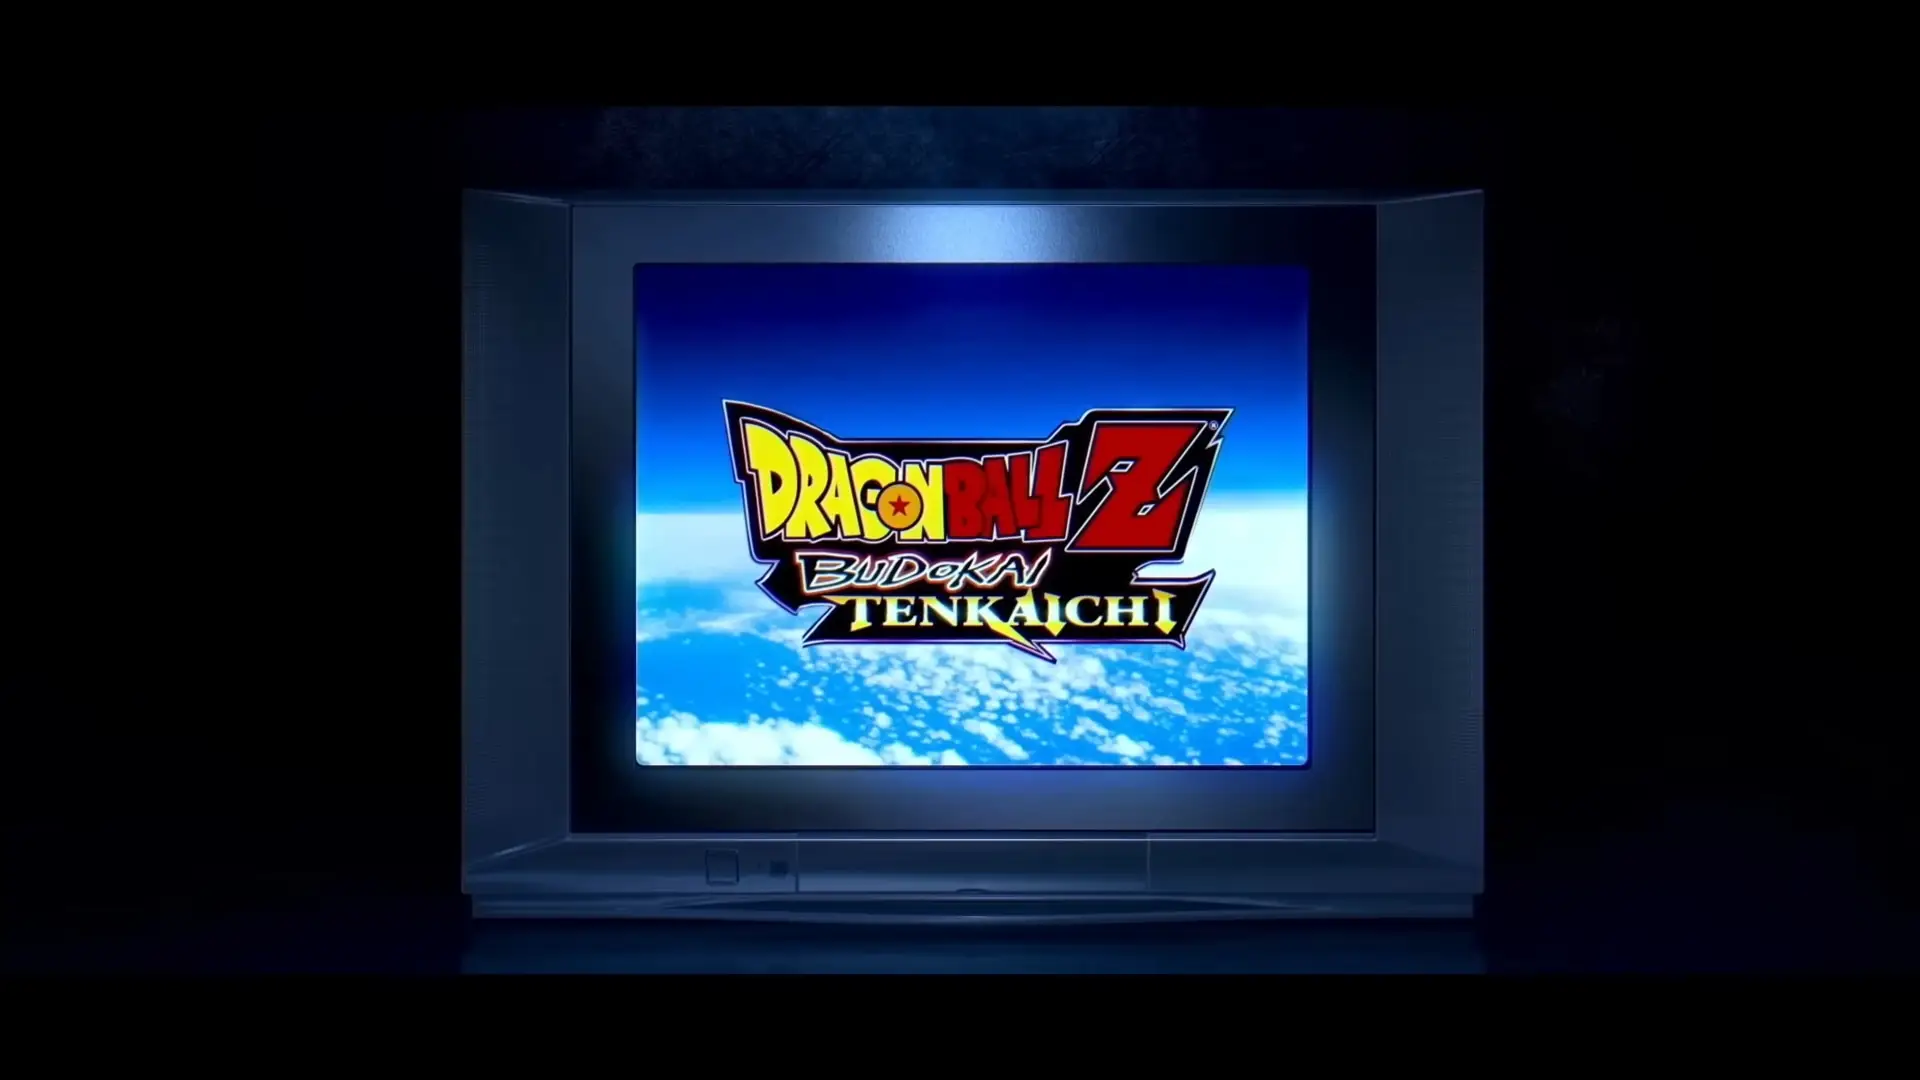 Captura del video promocional del juego Dragon Ball Z Budokai Tenkaichi 4 con el logo en una televisión